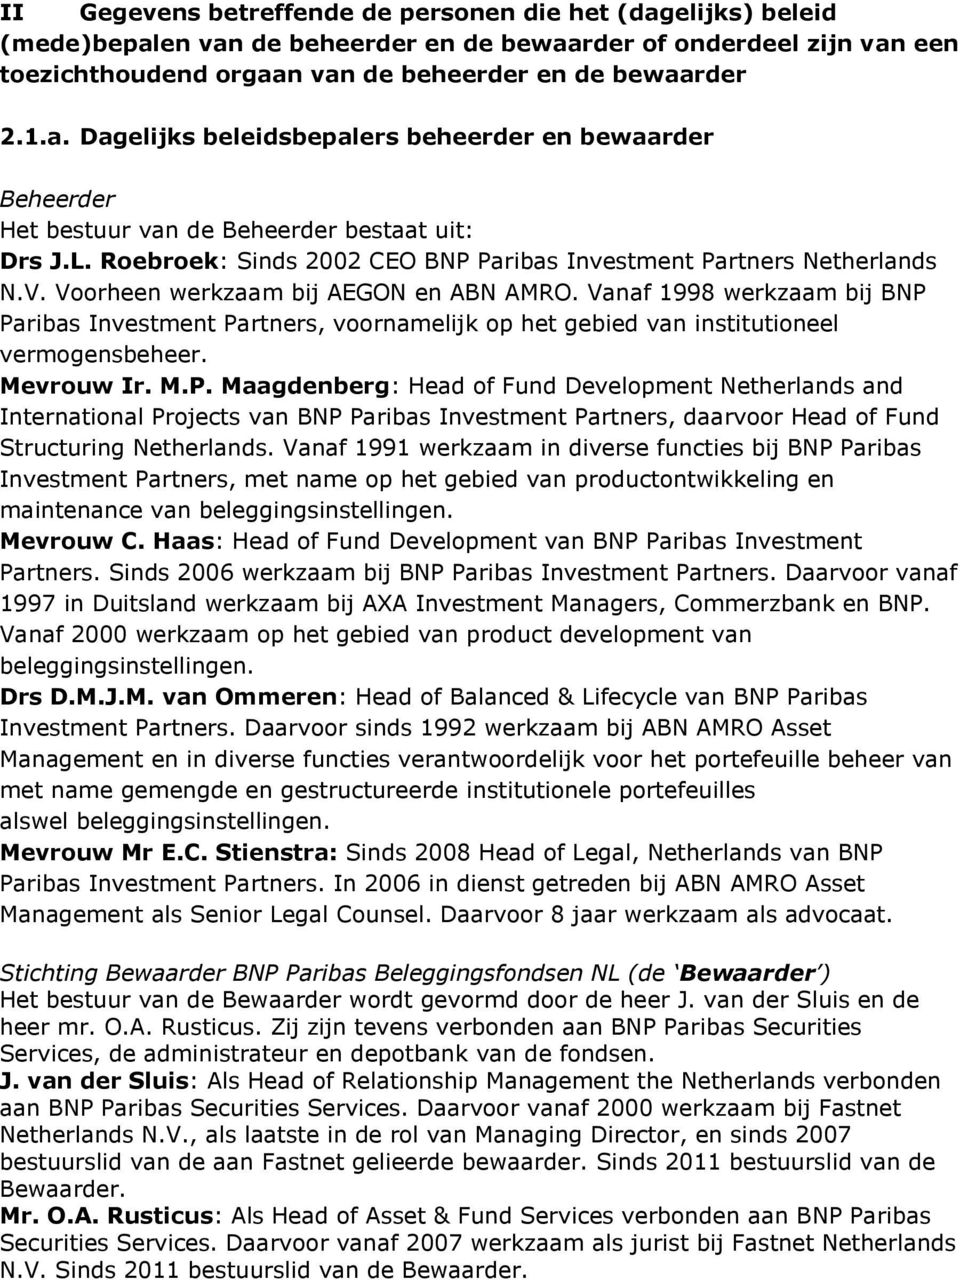 Vanaf 1998 werkzaam bij BNP Paribas Investment Partners, voornamelijk op het gebied van institutioneel vermogensbeheer. Mevrouw Ir. M.P. Maagdenberg: Head of Fund Development Netherlands and International Projects van BNP Paribas Investment Partners, daarvoor Head of Fund Structuring Netherlands.